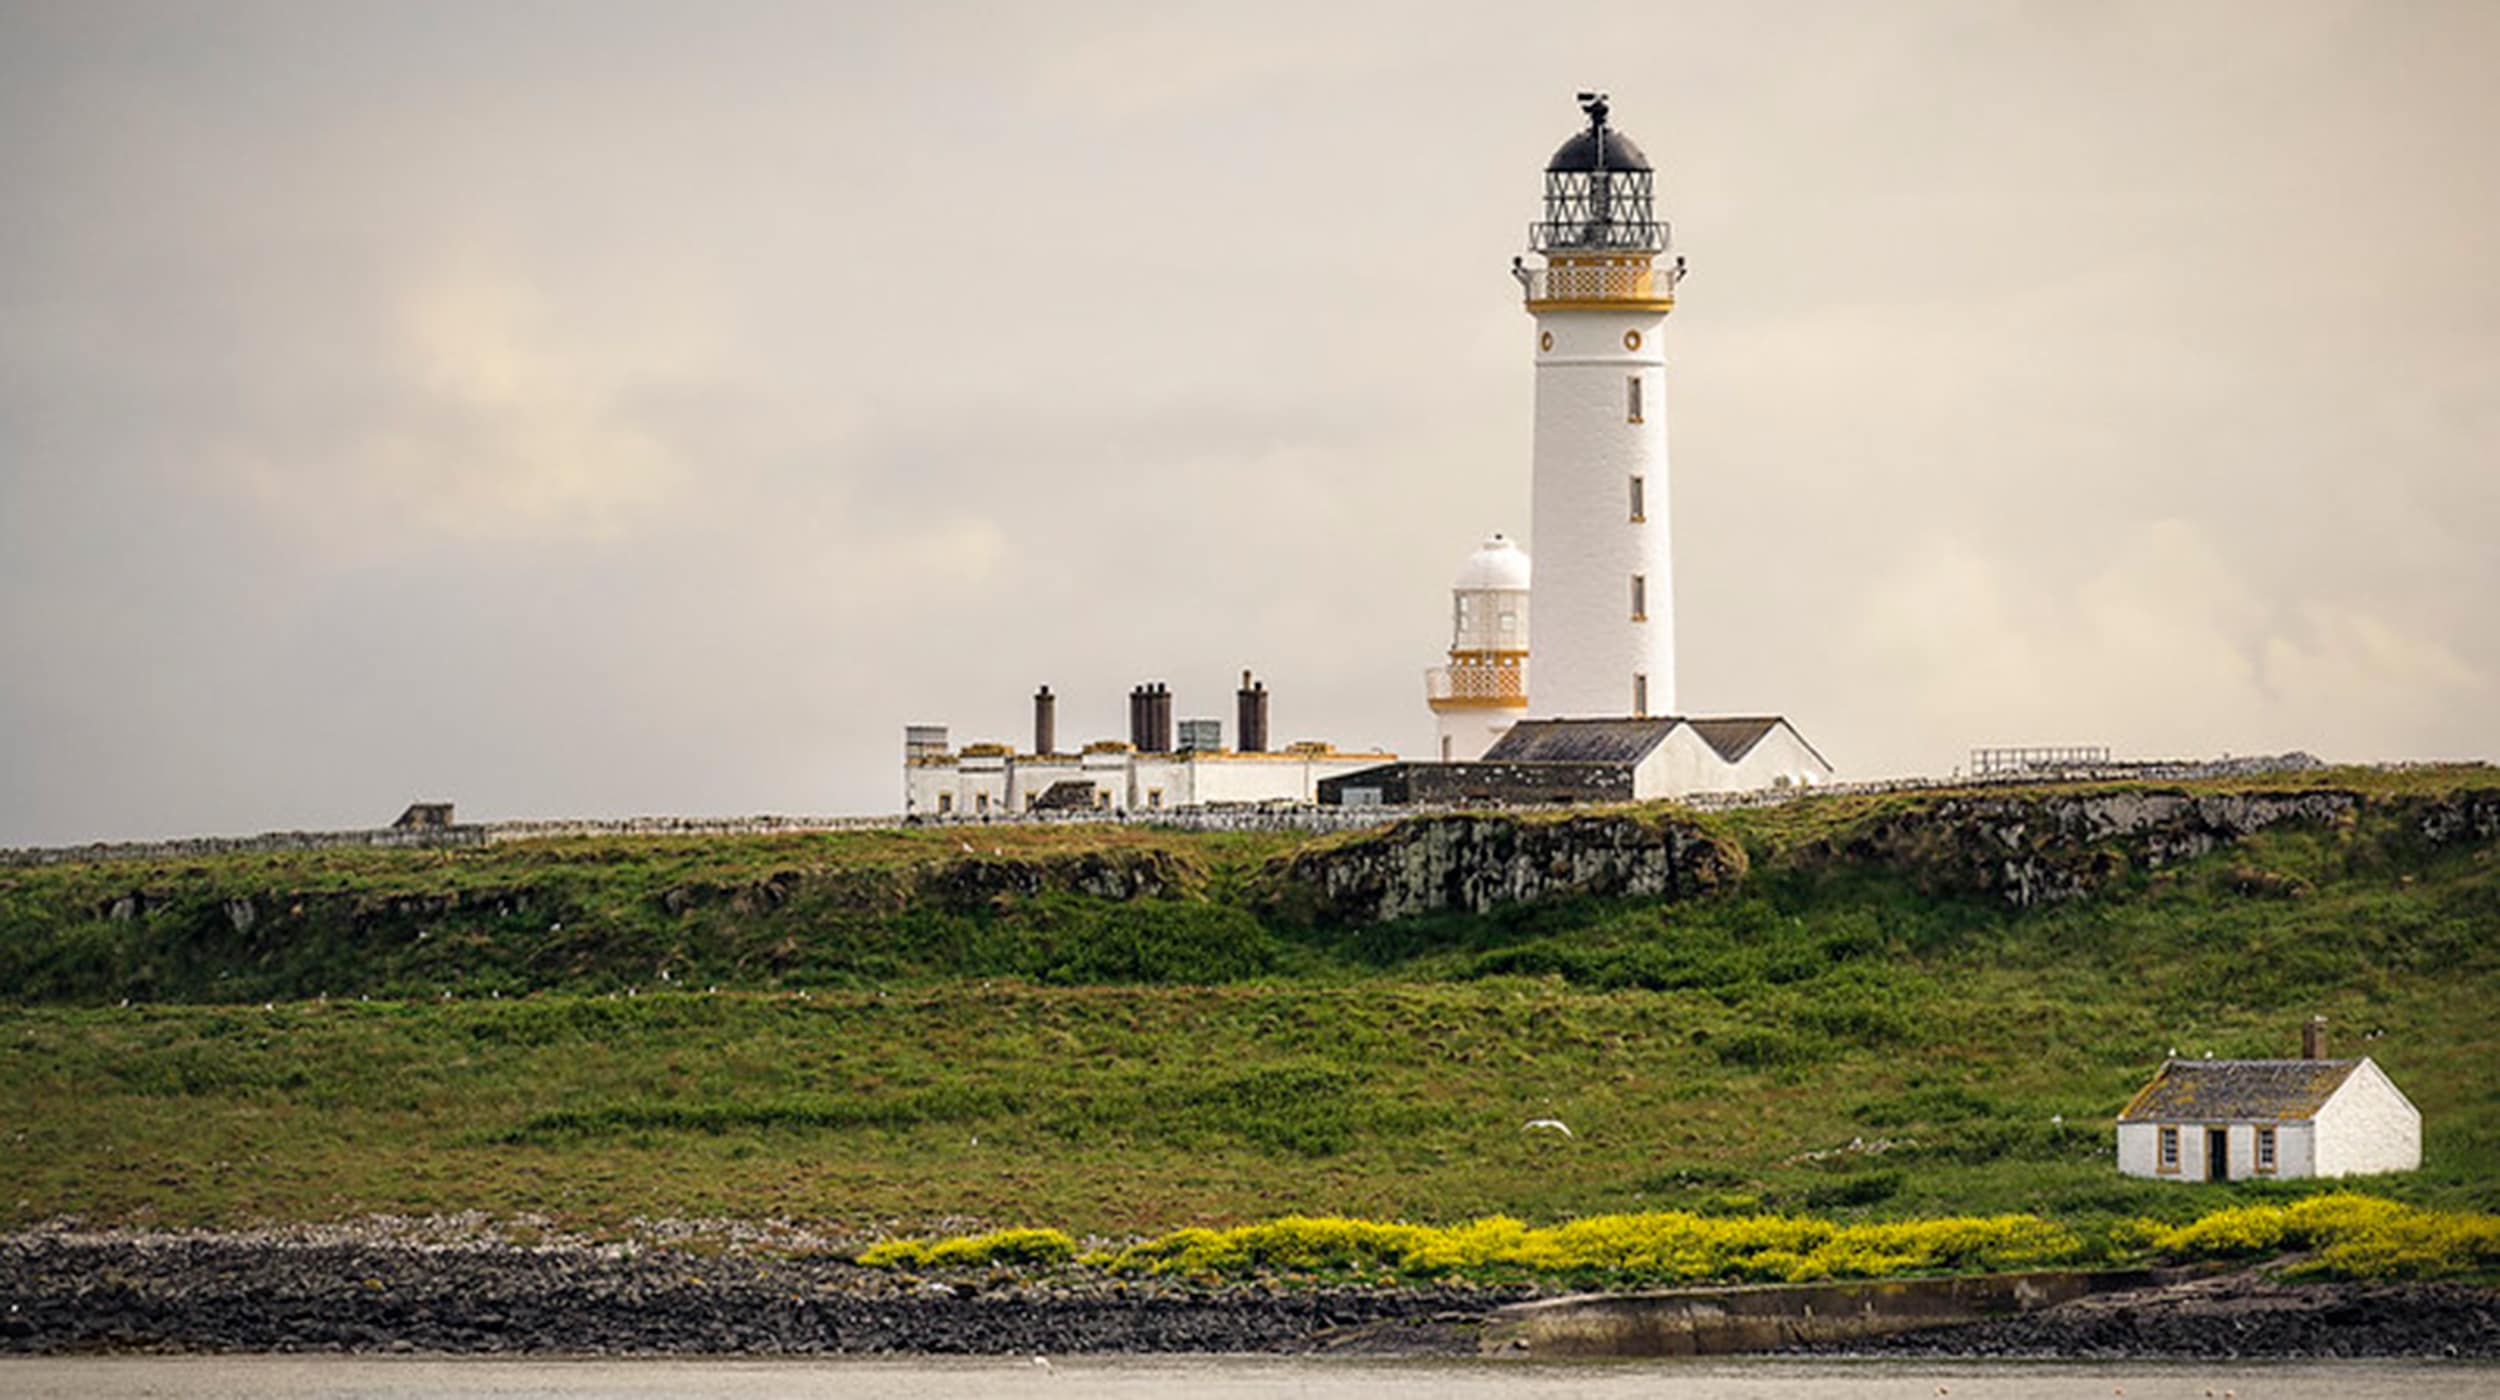 Pladda Lighthouse. Image: James Johnstone